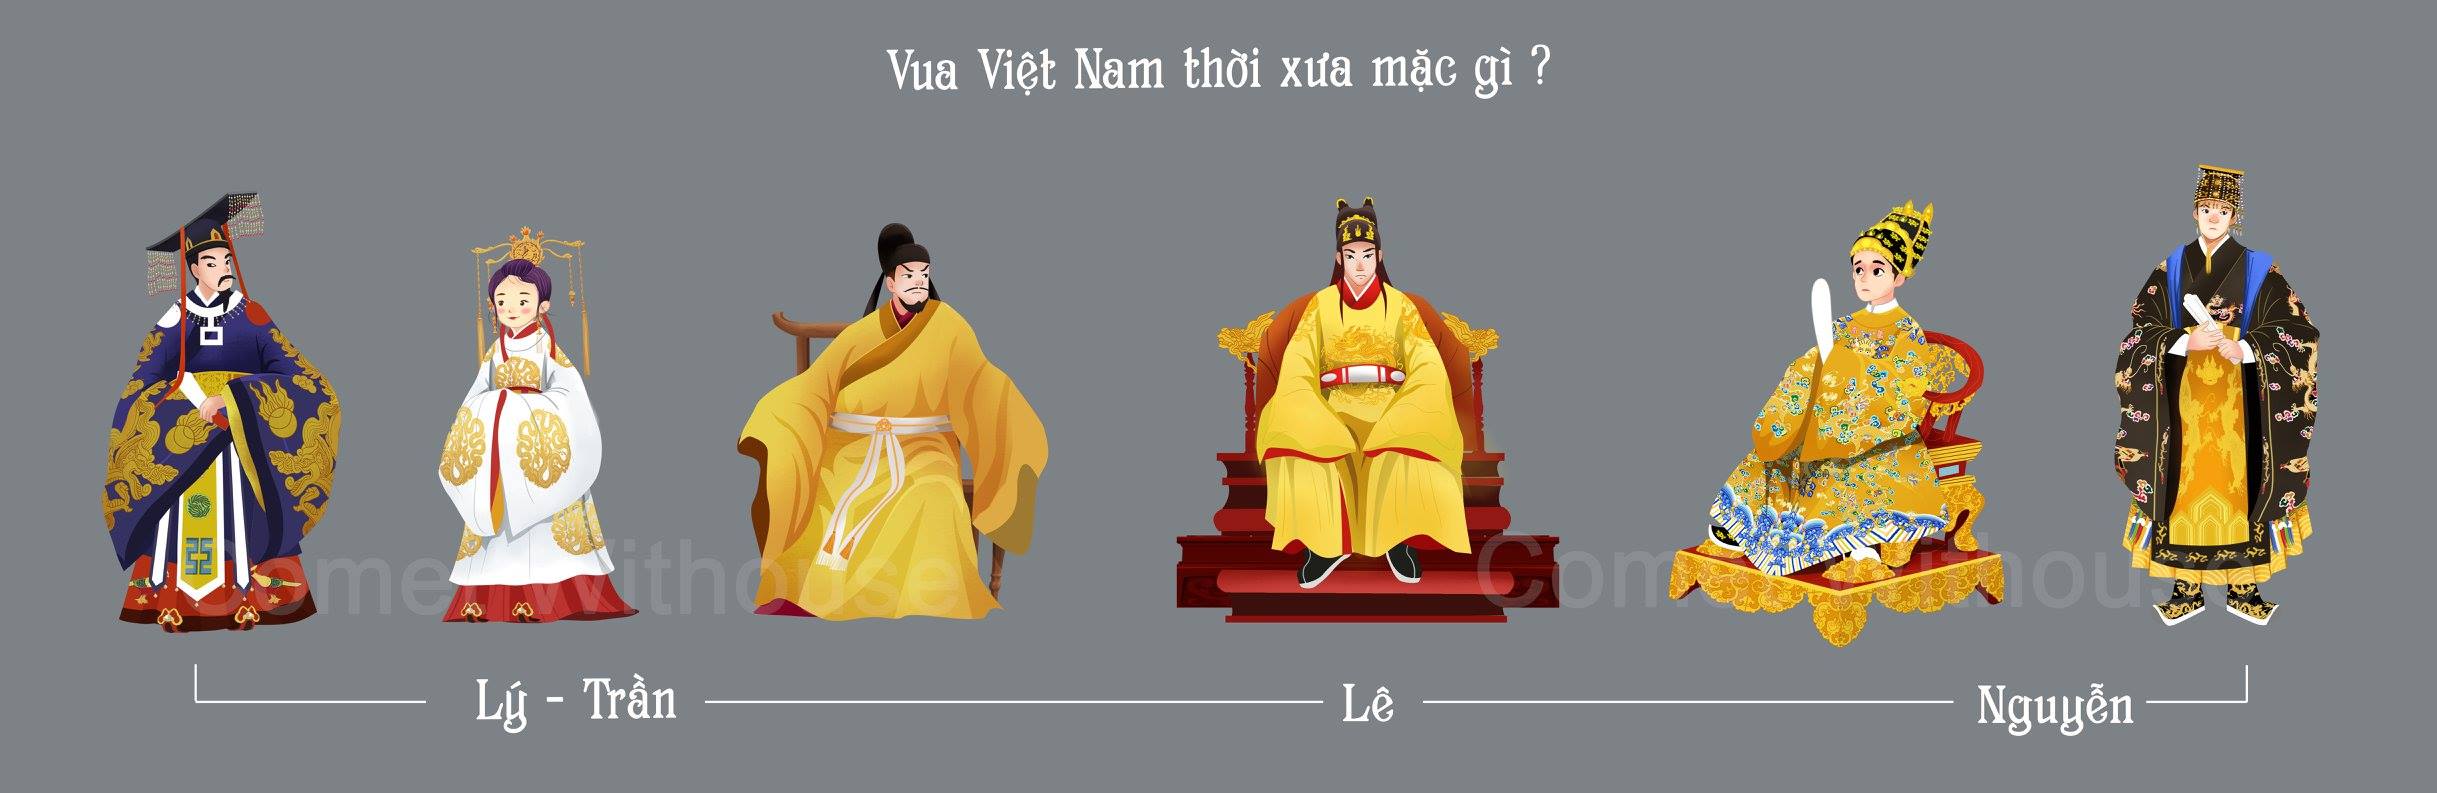 Vua Việt Nam thời xưa mặc gì?